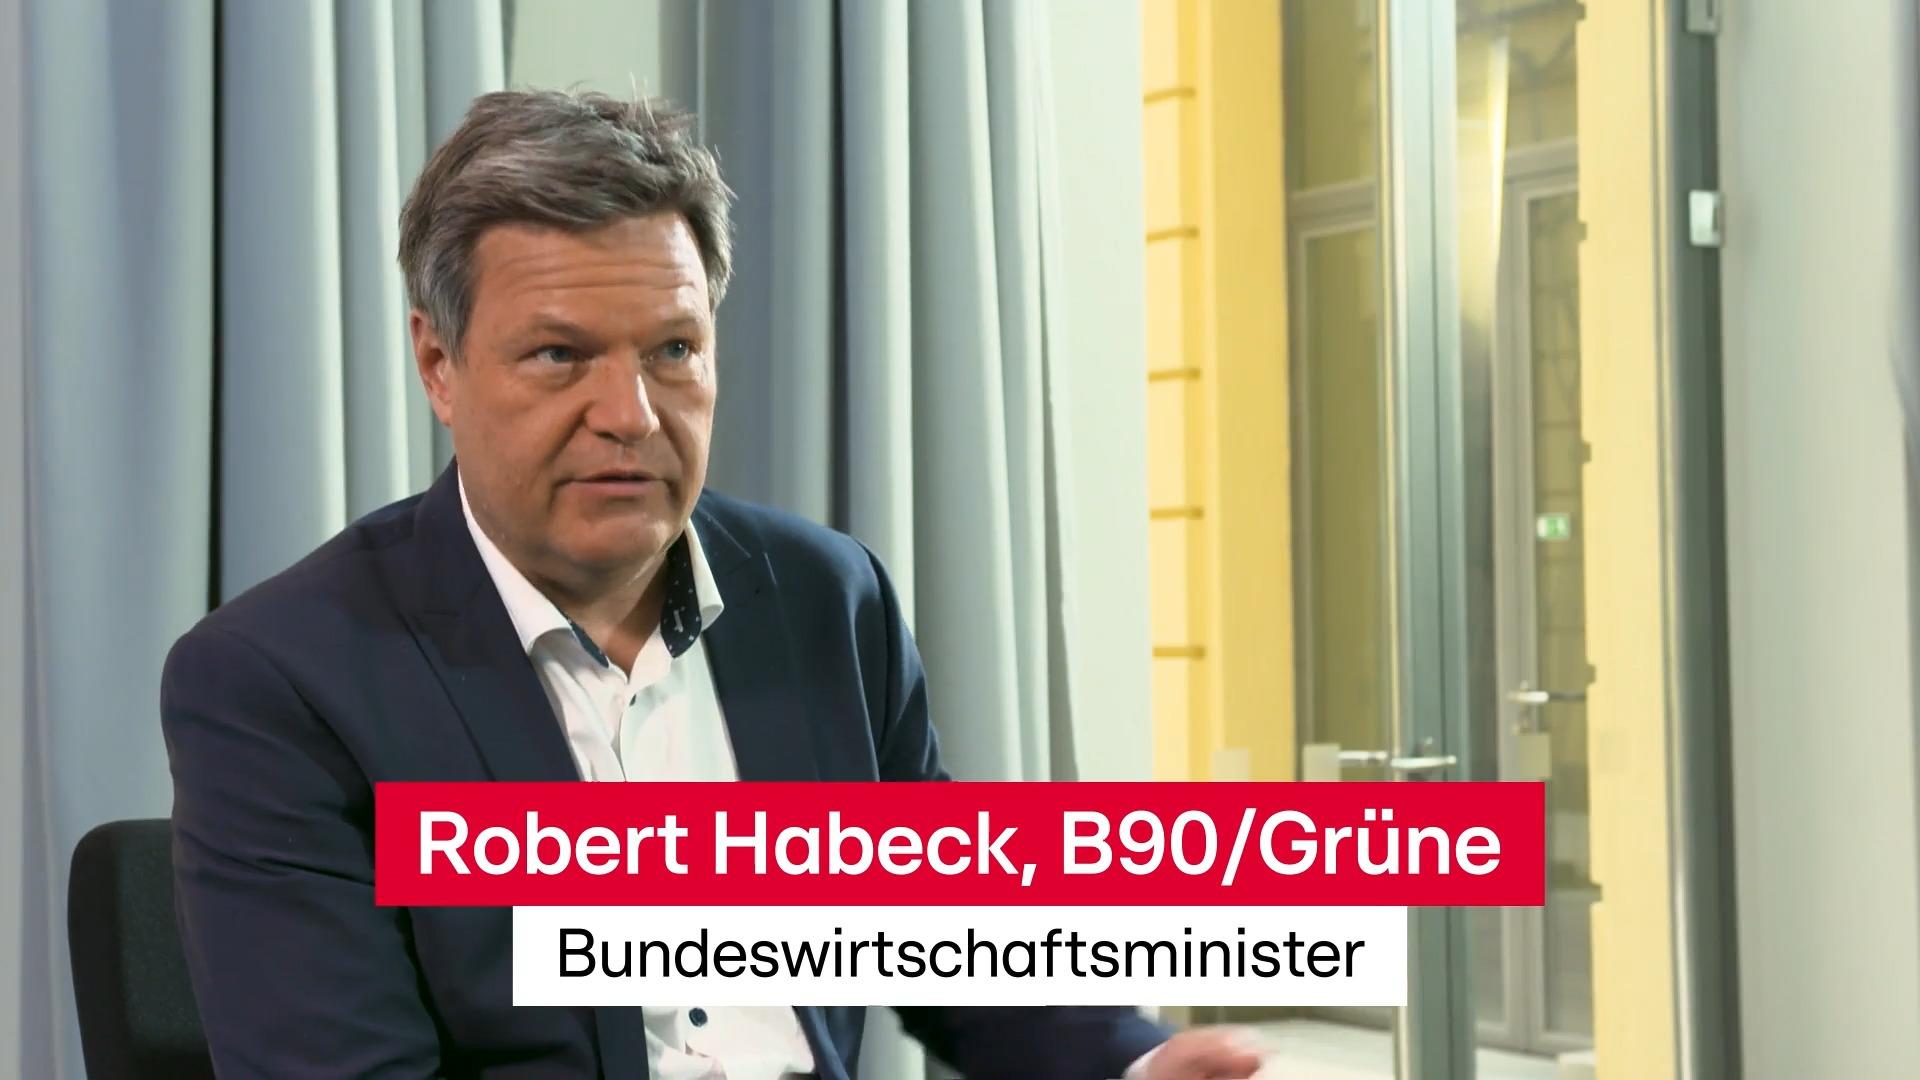 So sieht Habeck die erneuerbare Zukunft Interview mit Robert Habeck